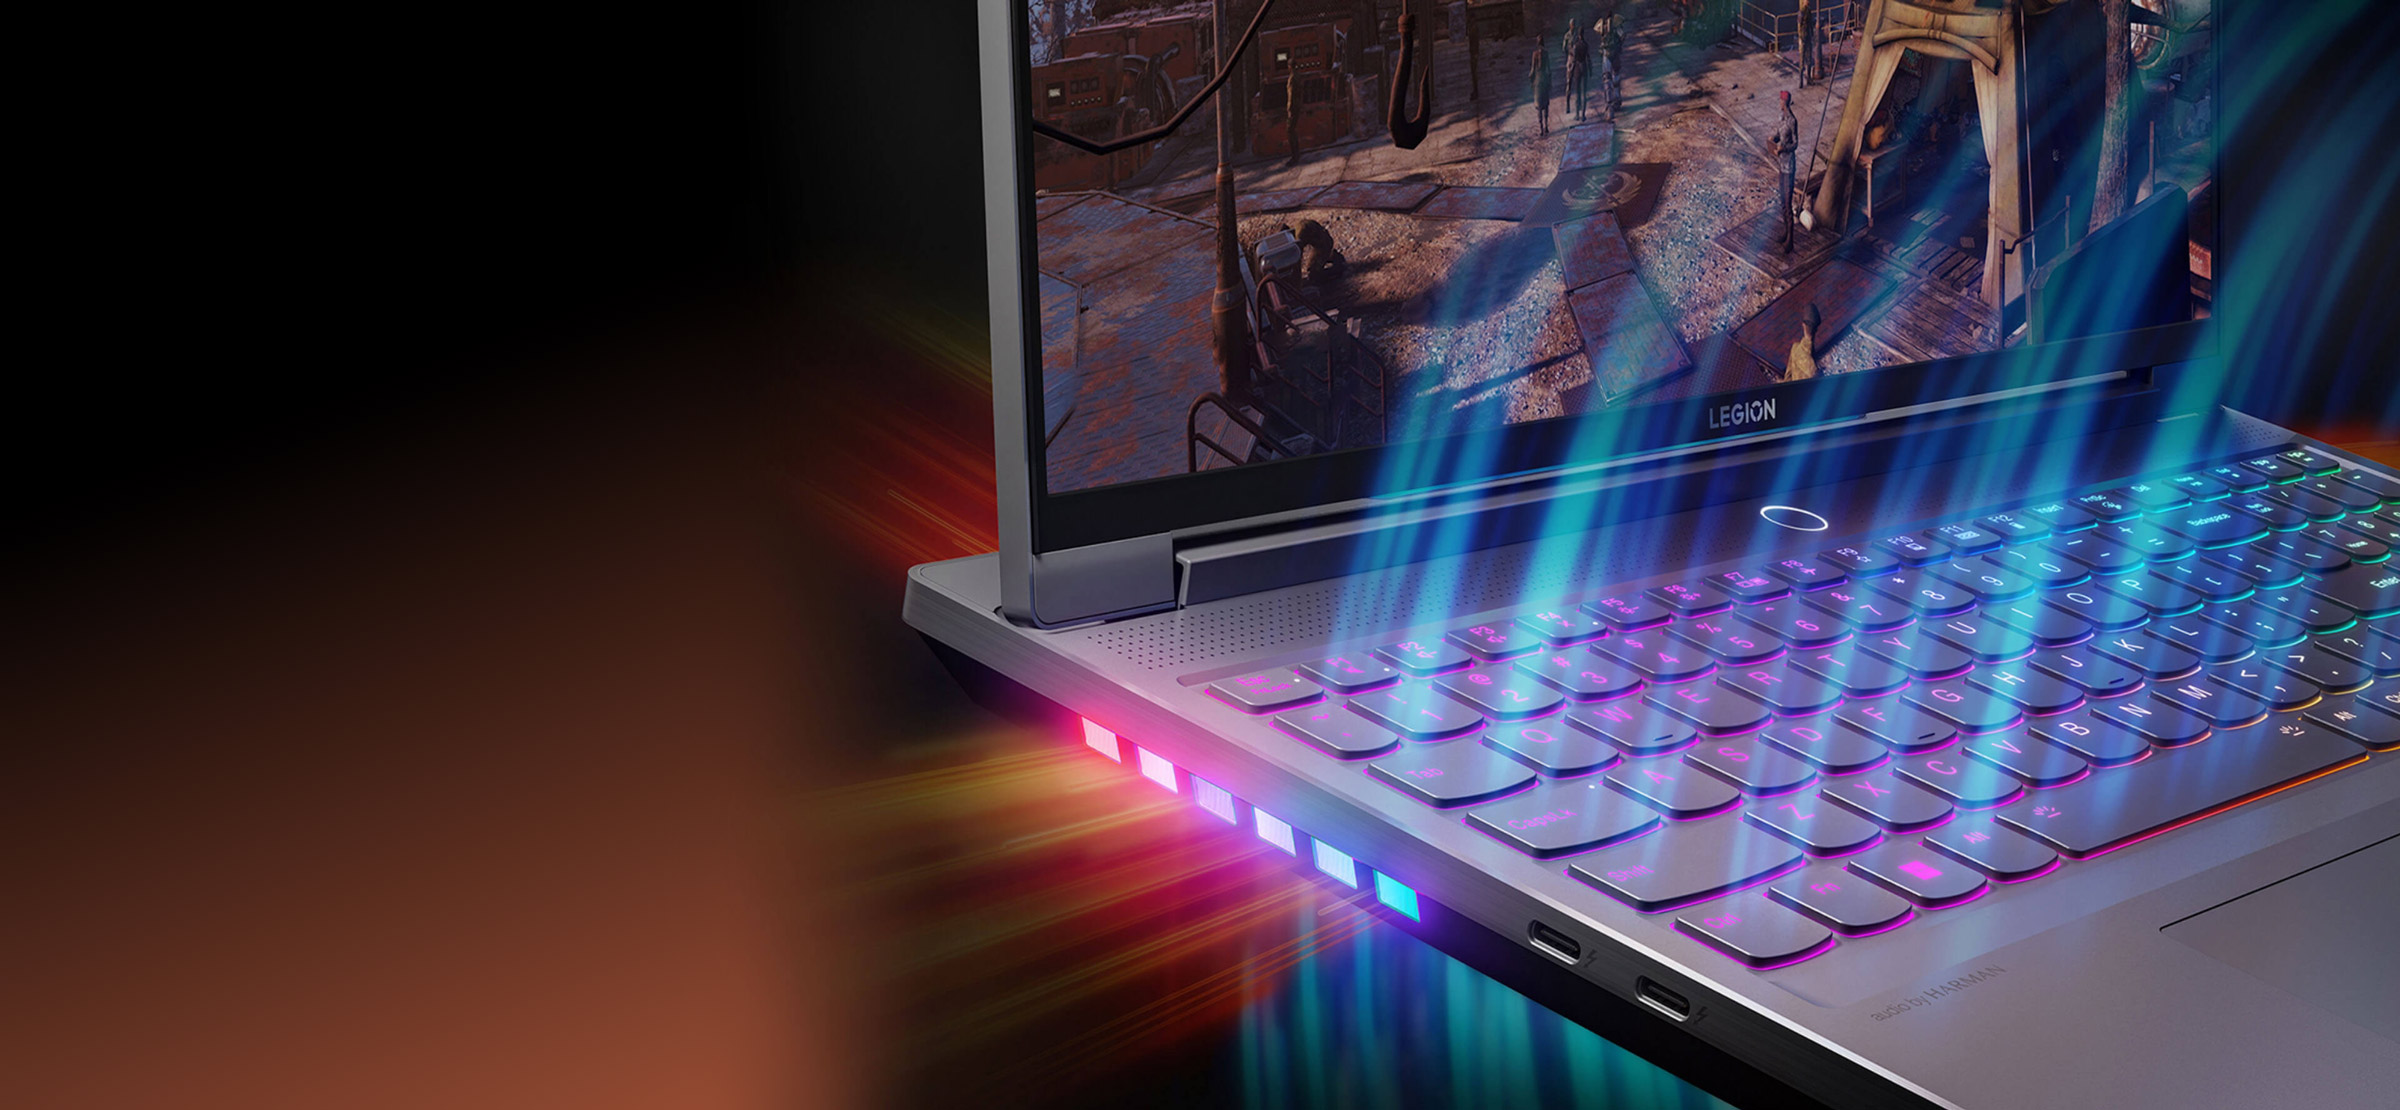 Bærbar Legion 7-PC åpen 90 grader sett forfra, vinklet til høyre, viser nærbilde av tastatur og dampkammerteknologi.